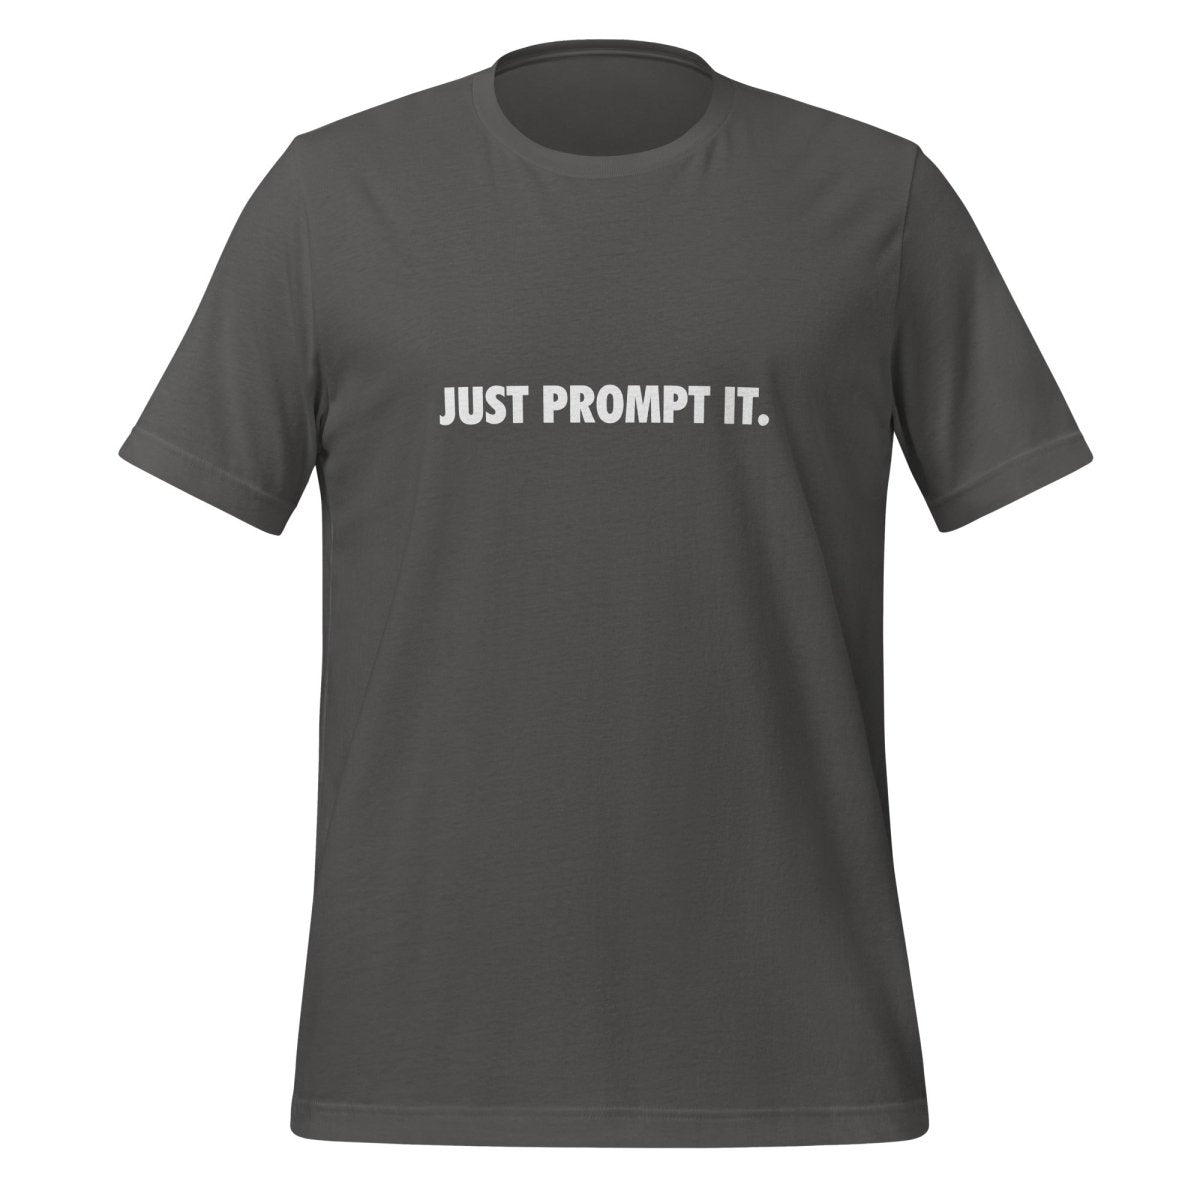 JUST PROMPT IT. T - Shirt (unisex) - Asphalt - AI Store